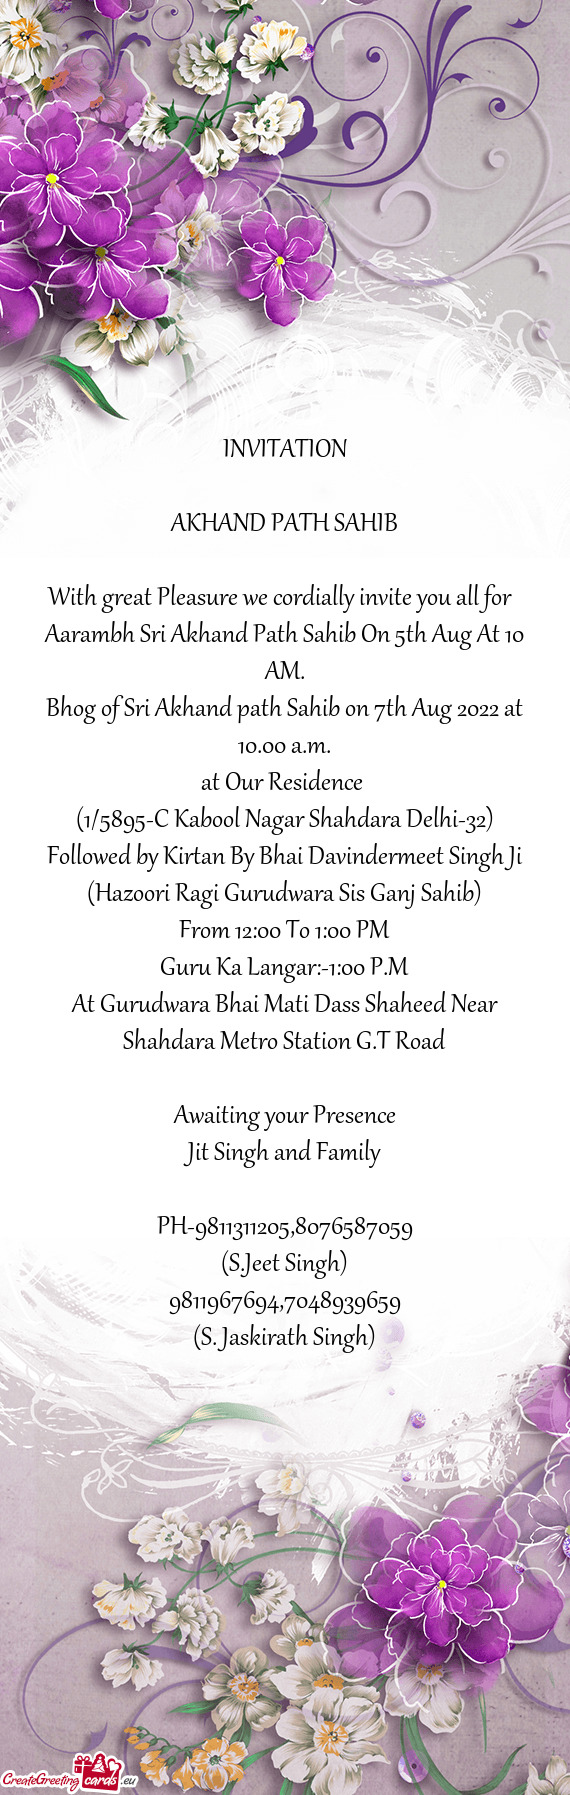 Aarambh Sri Akhand Path Sahib On 5th Aug At 10 AM